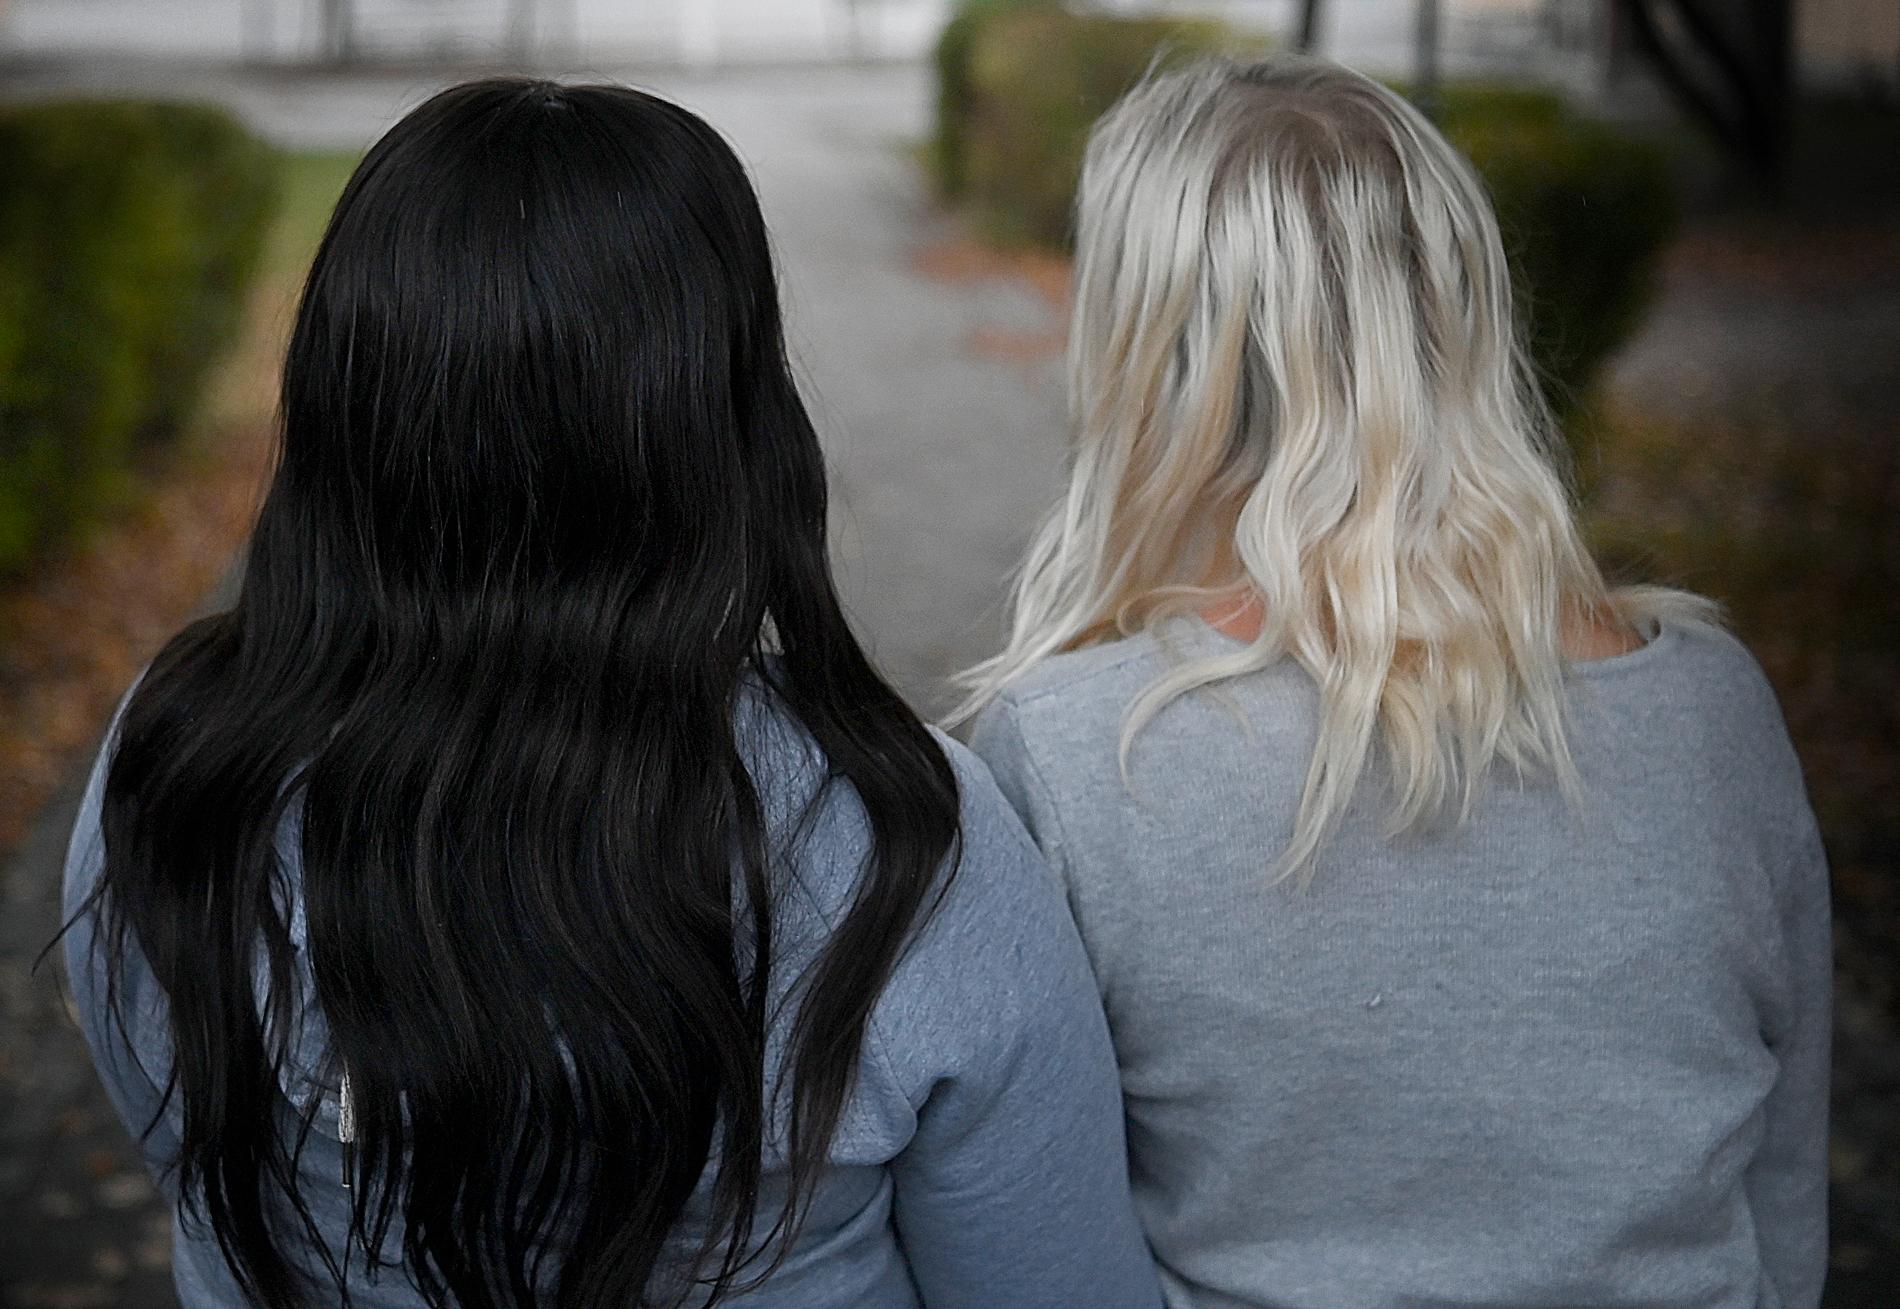 Rebecka berättar att hon har blivit utsatt för rasistiska kommentarer på en skola i södra Stockholm i flera år. Till slut fick en av hennes bästa kompisar Matilda nog och anmälde skolan. 